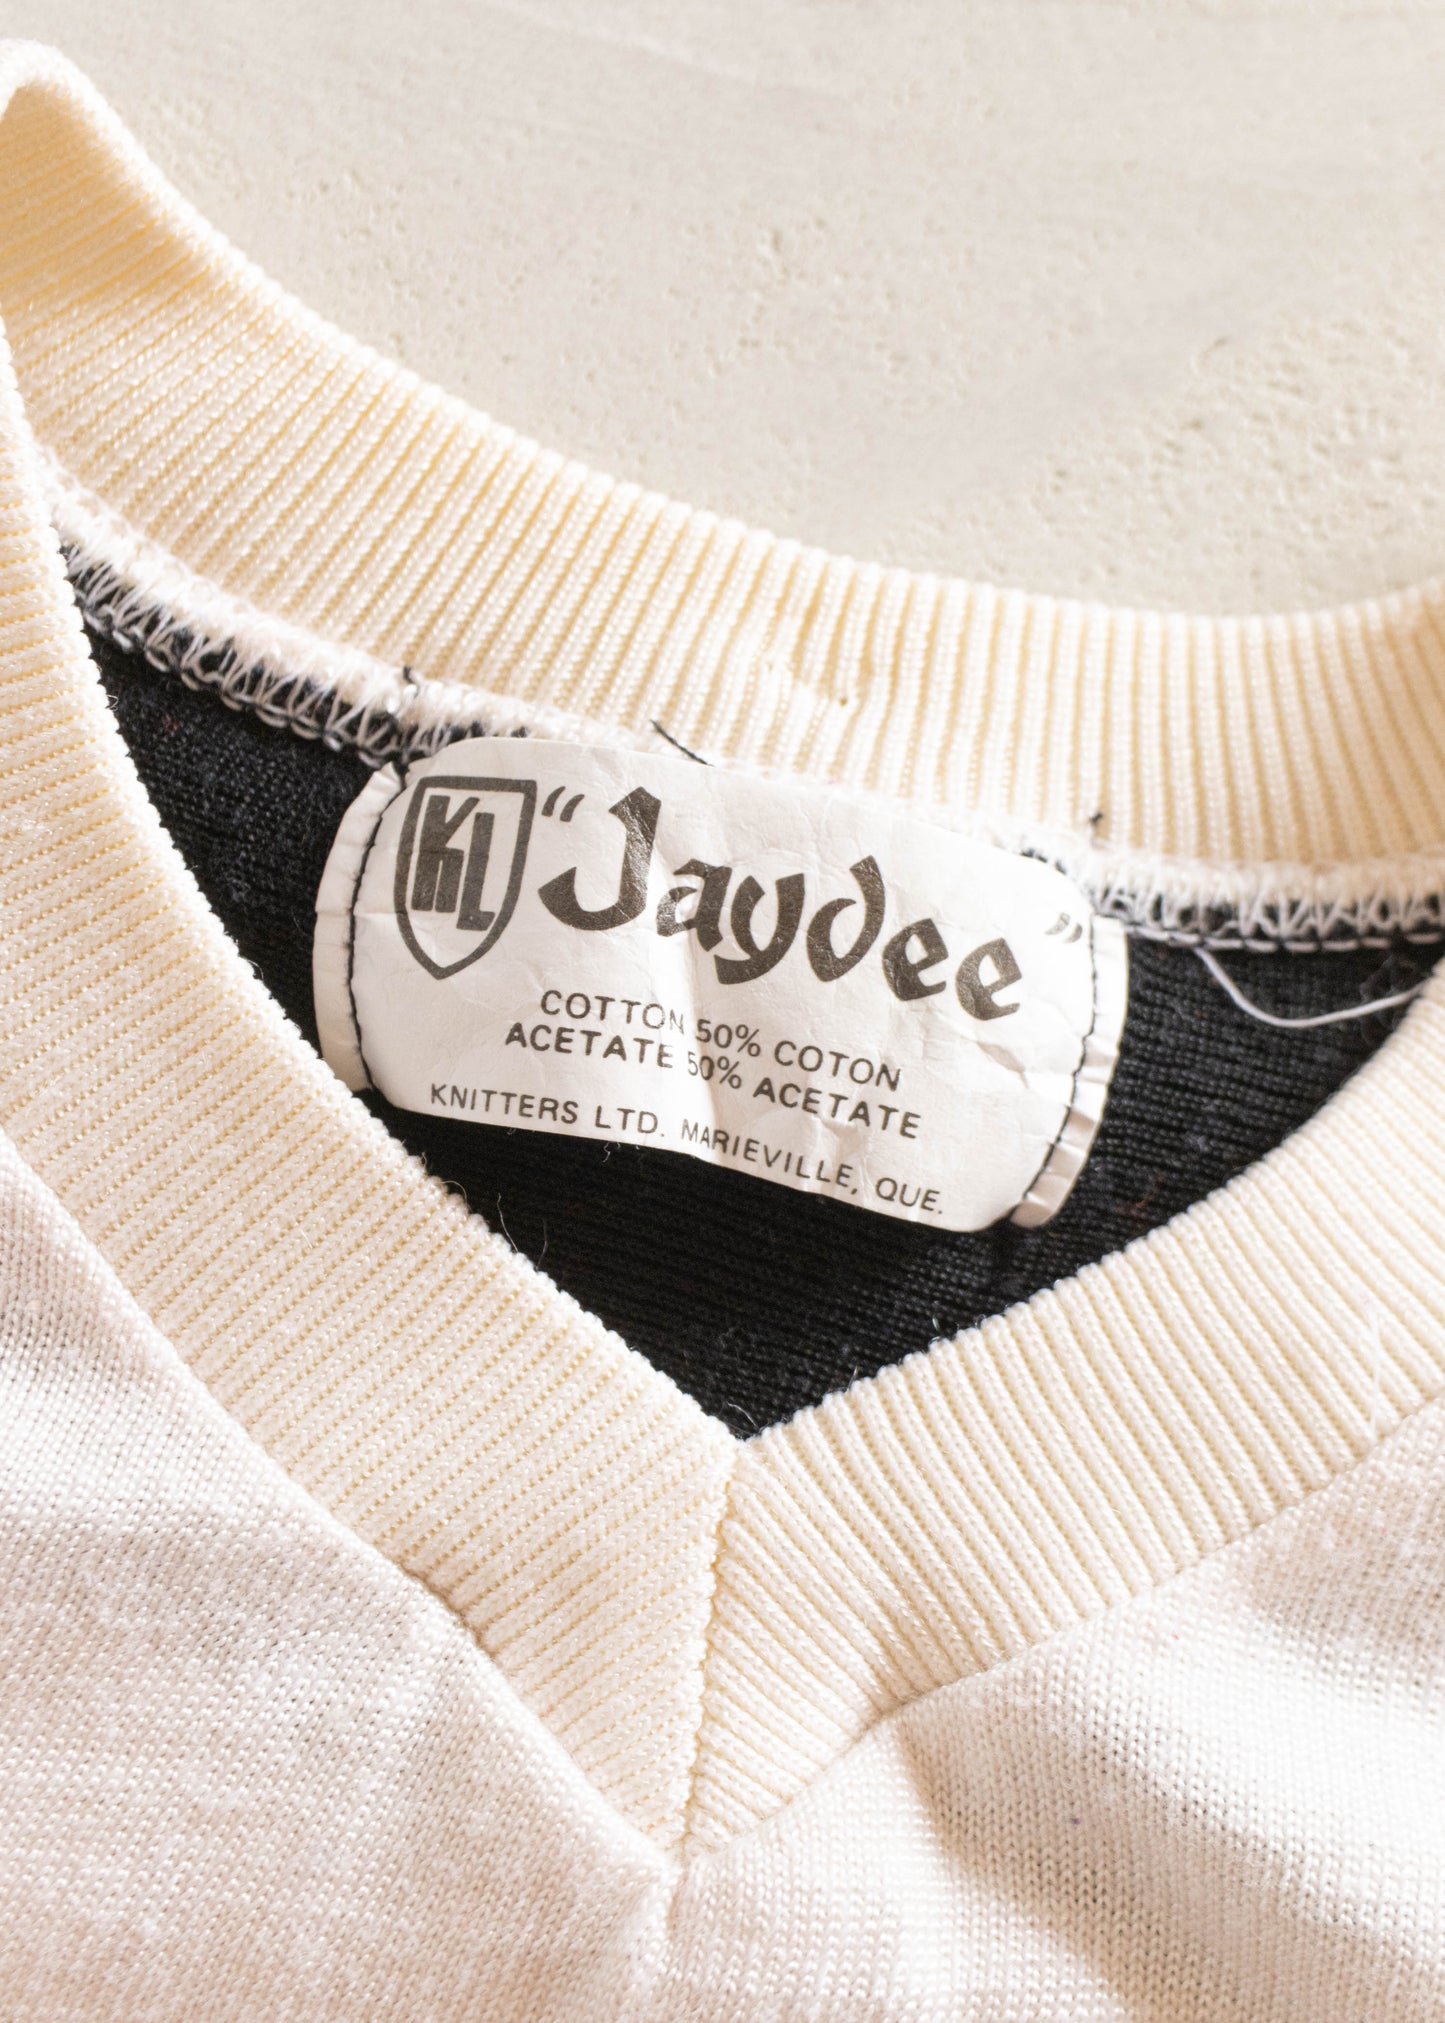 1980s Jaydee Knitters Ltd Long Sleeve Sport Jersey Size M/L